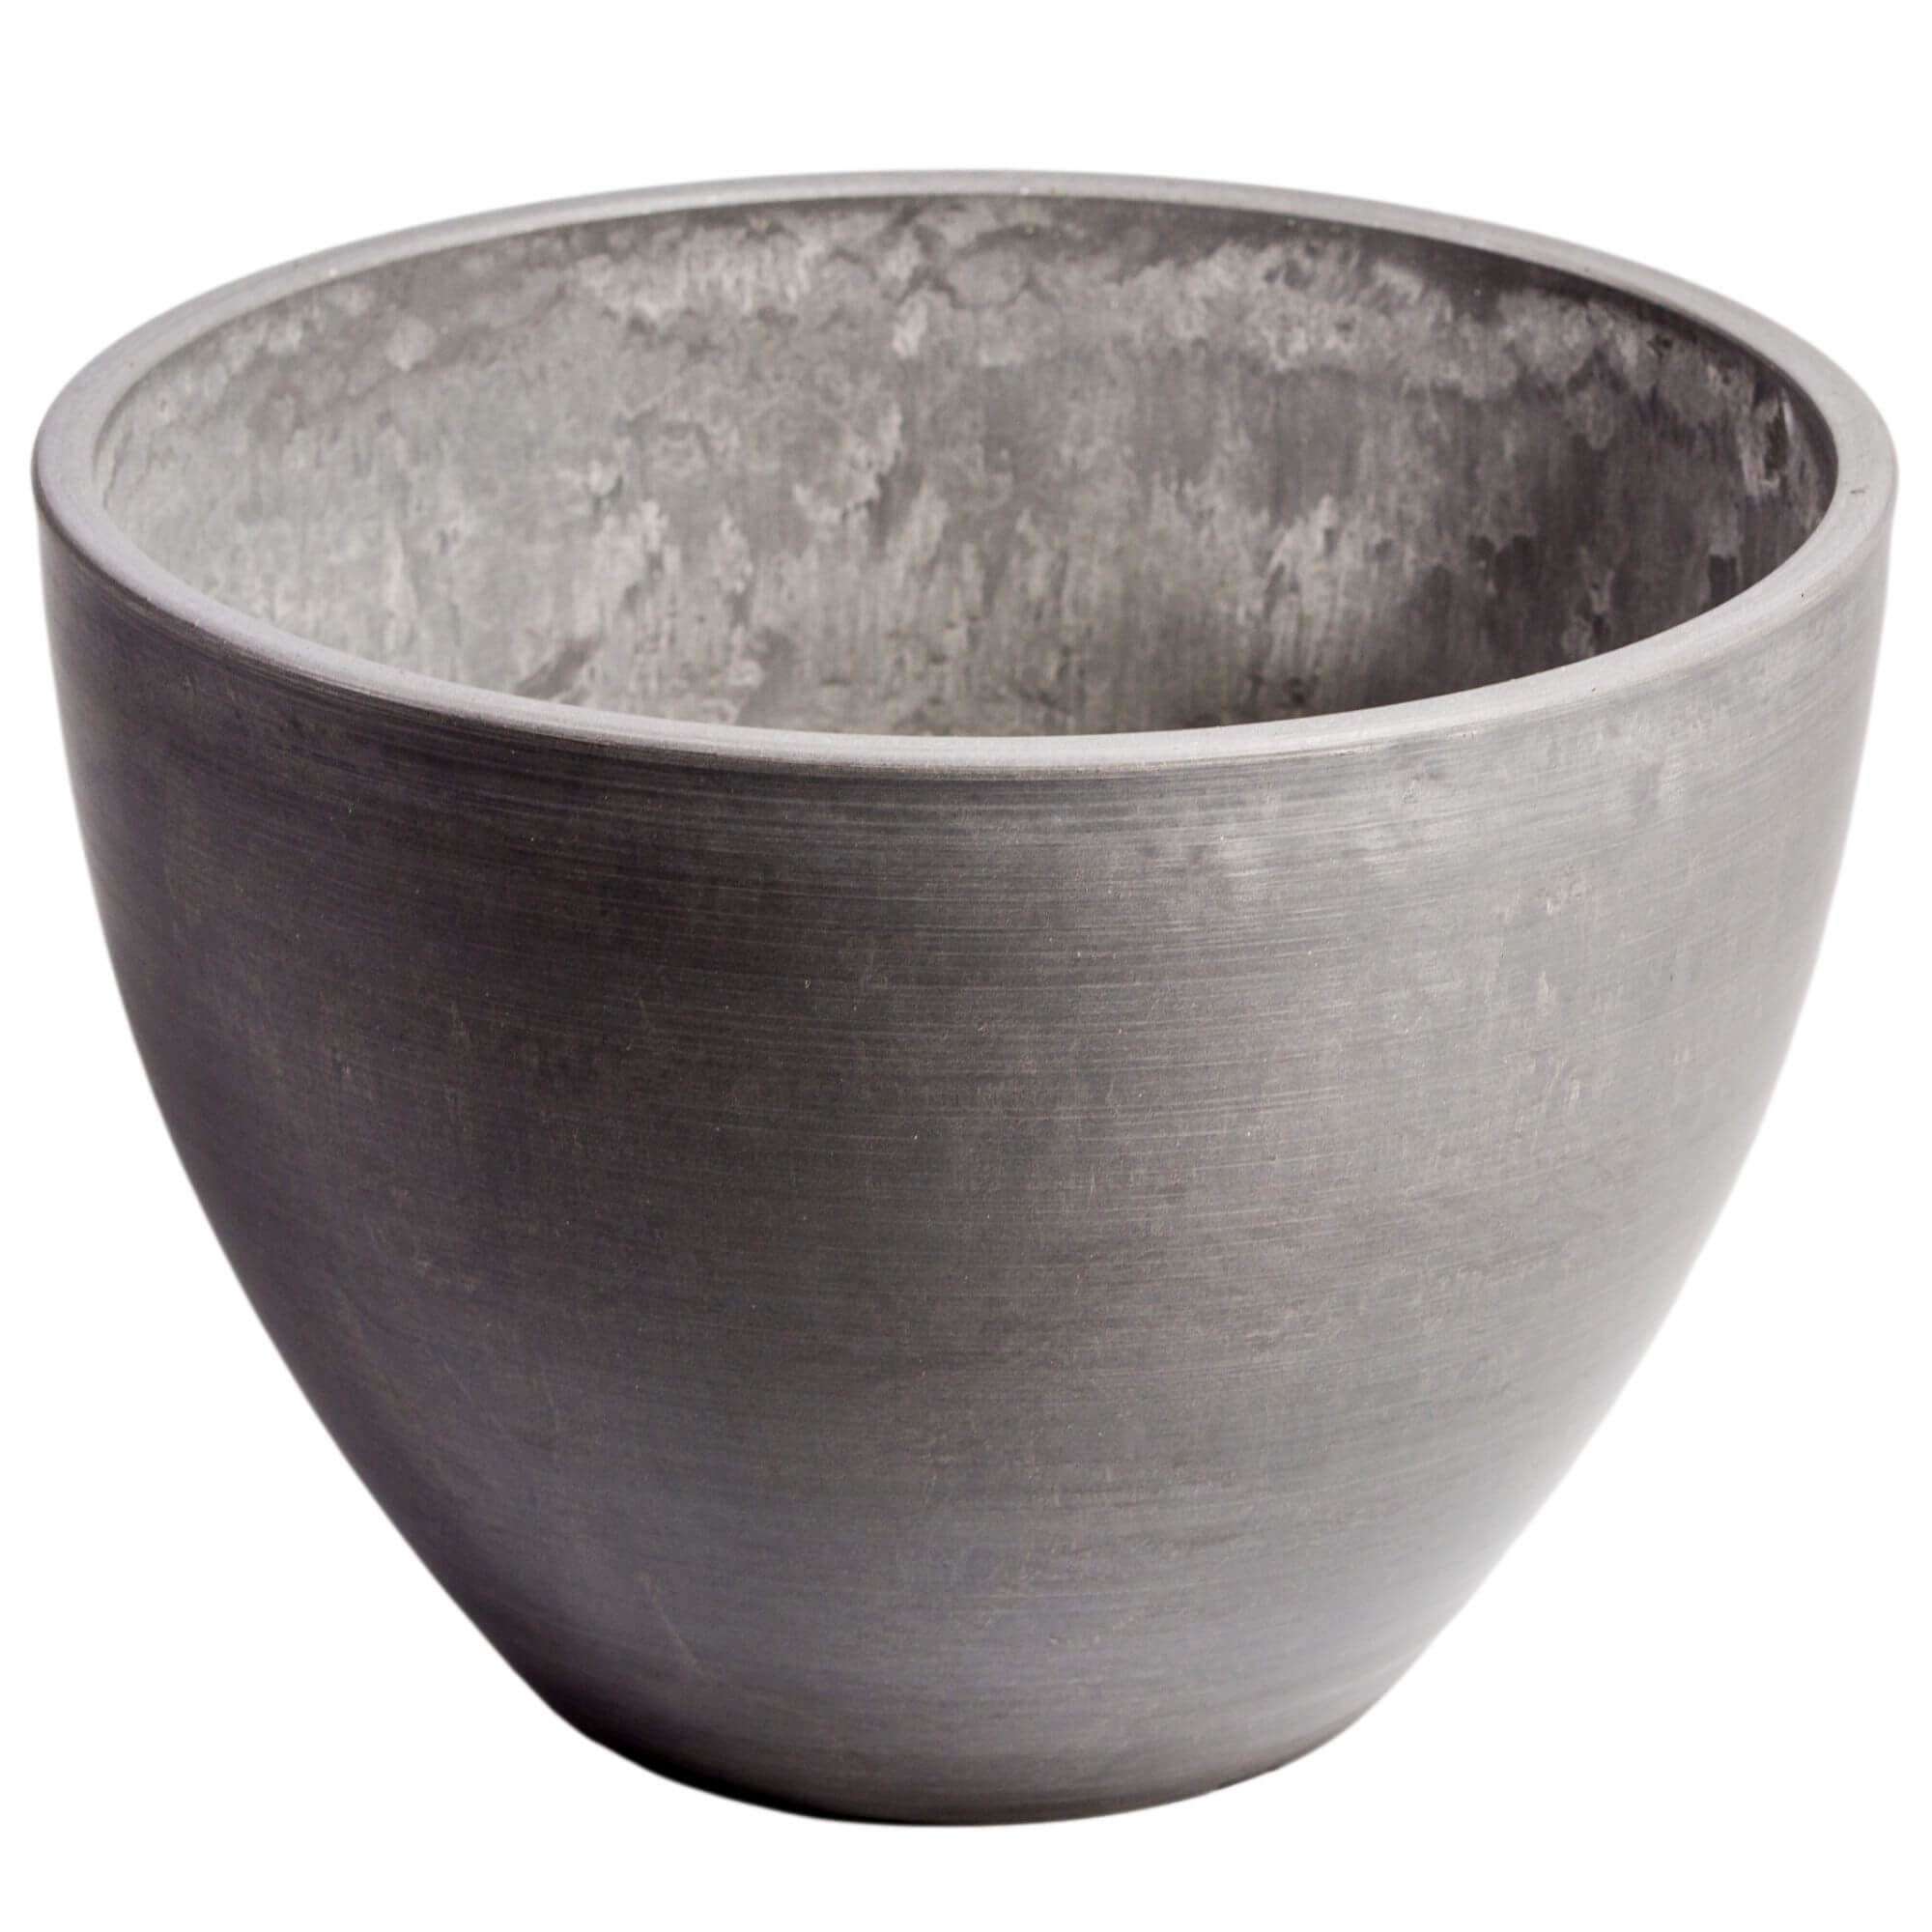 Polished Grey Planter Bowl 30cm - Designer Vertical Gardens Pots